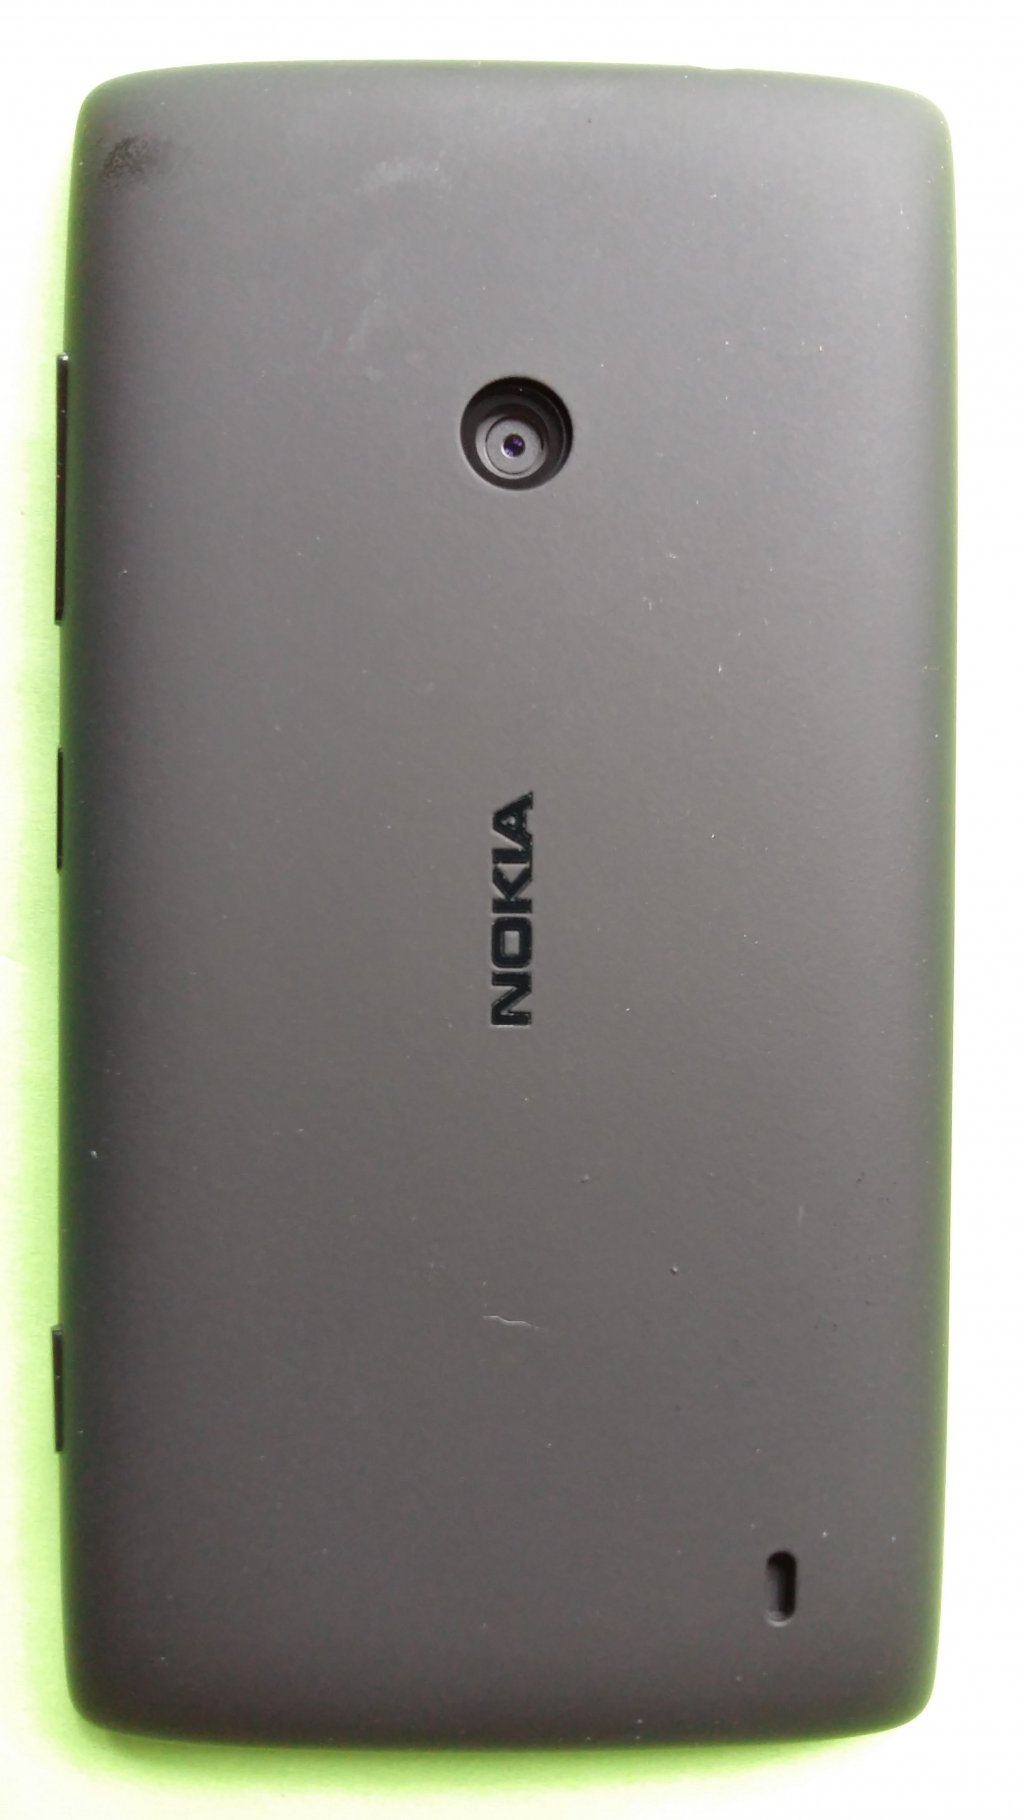 image-8785298-Nokia_525_Lumia_(1)2.w640.jpg